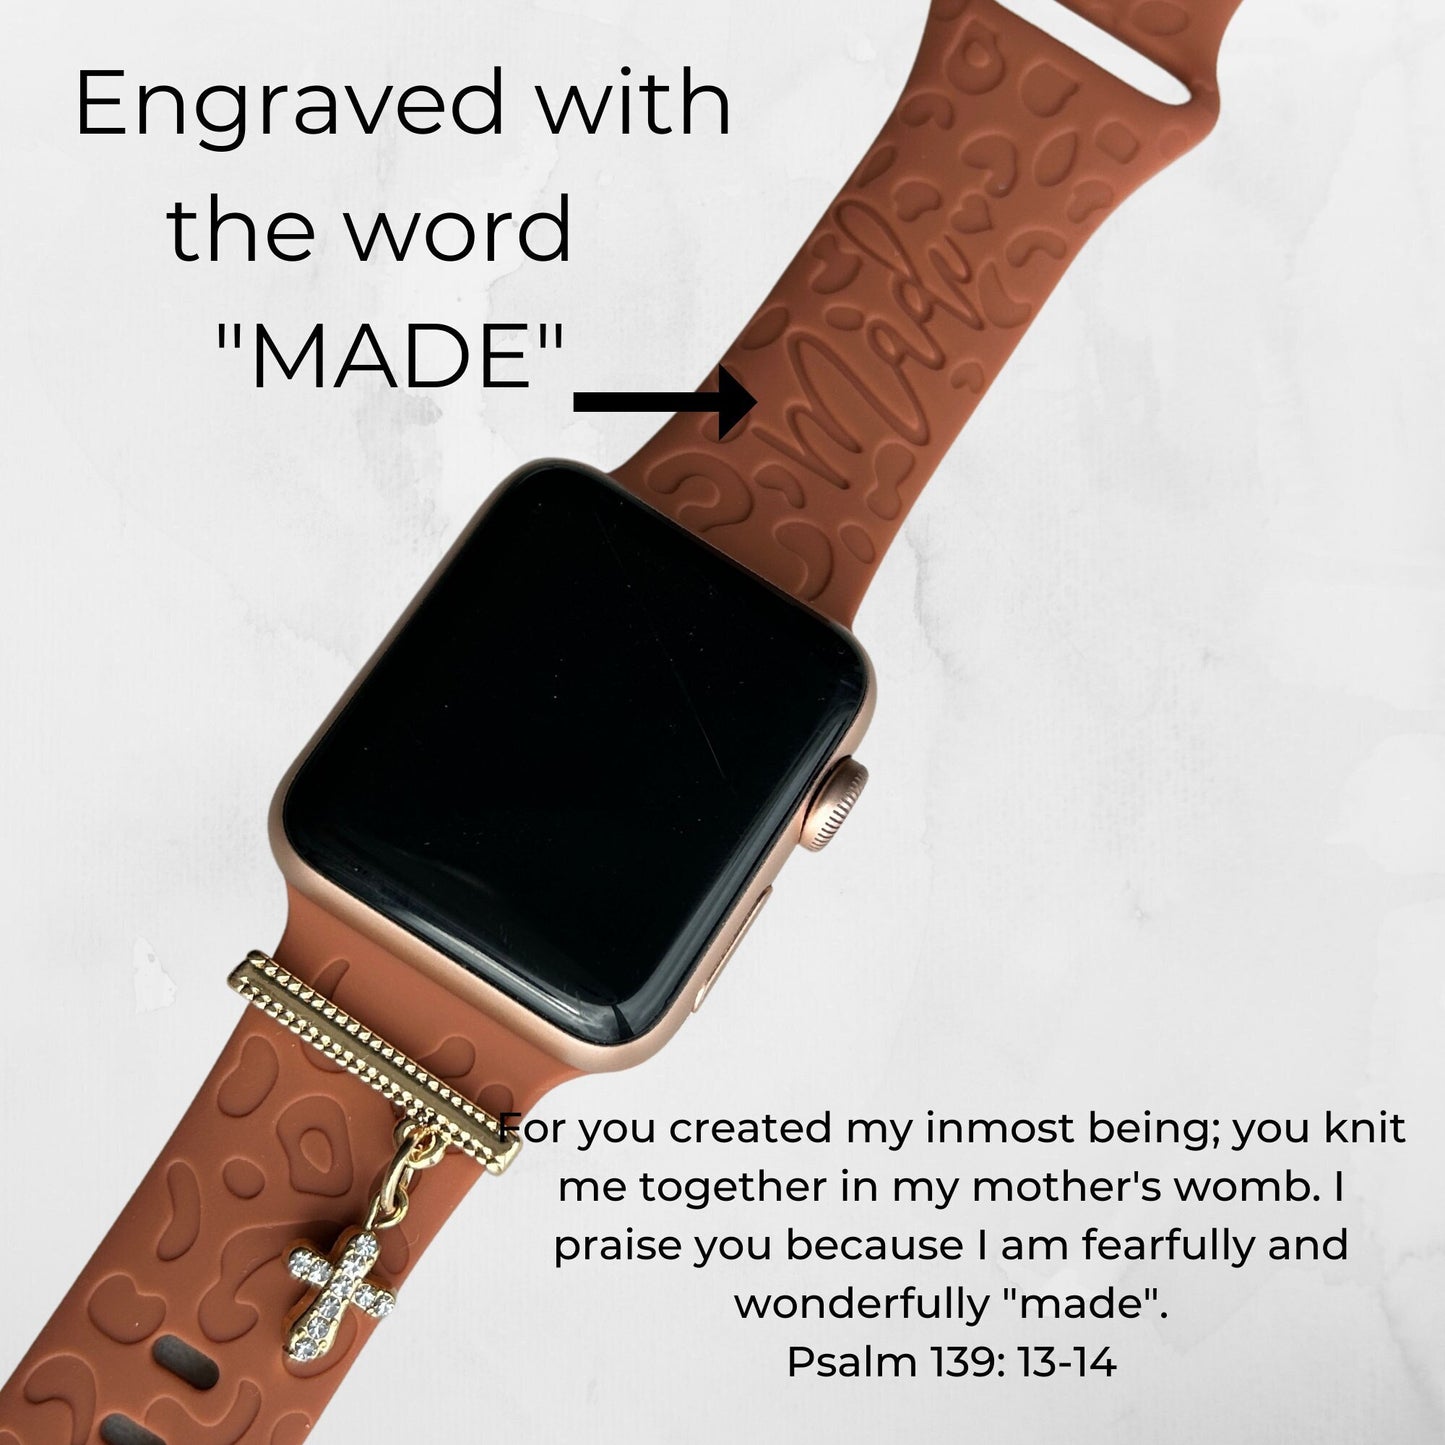 Christian Apple Watchband, Bible Verse Watchband, Cheetah Apple Watchband, Cross Apple Watchband, Cross Watch Charm, Cross Watch Bar